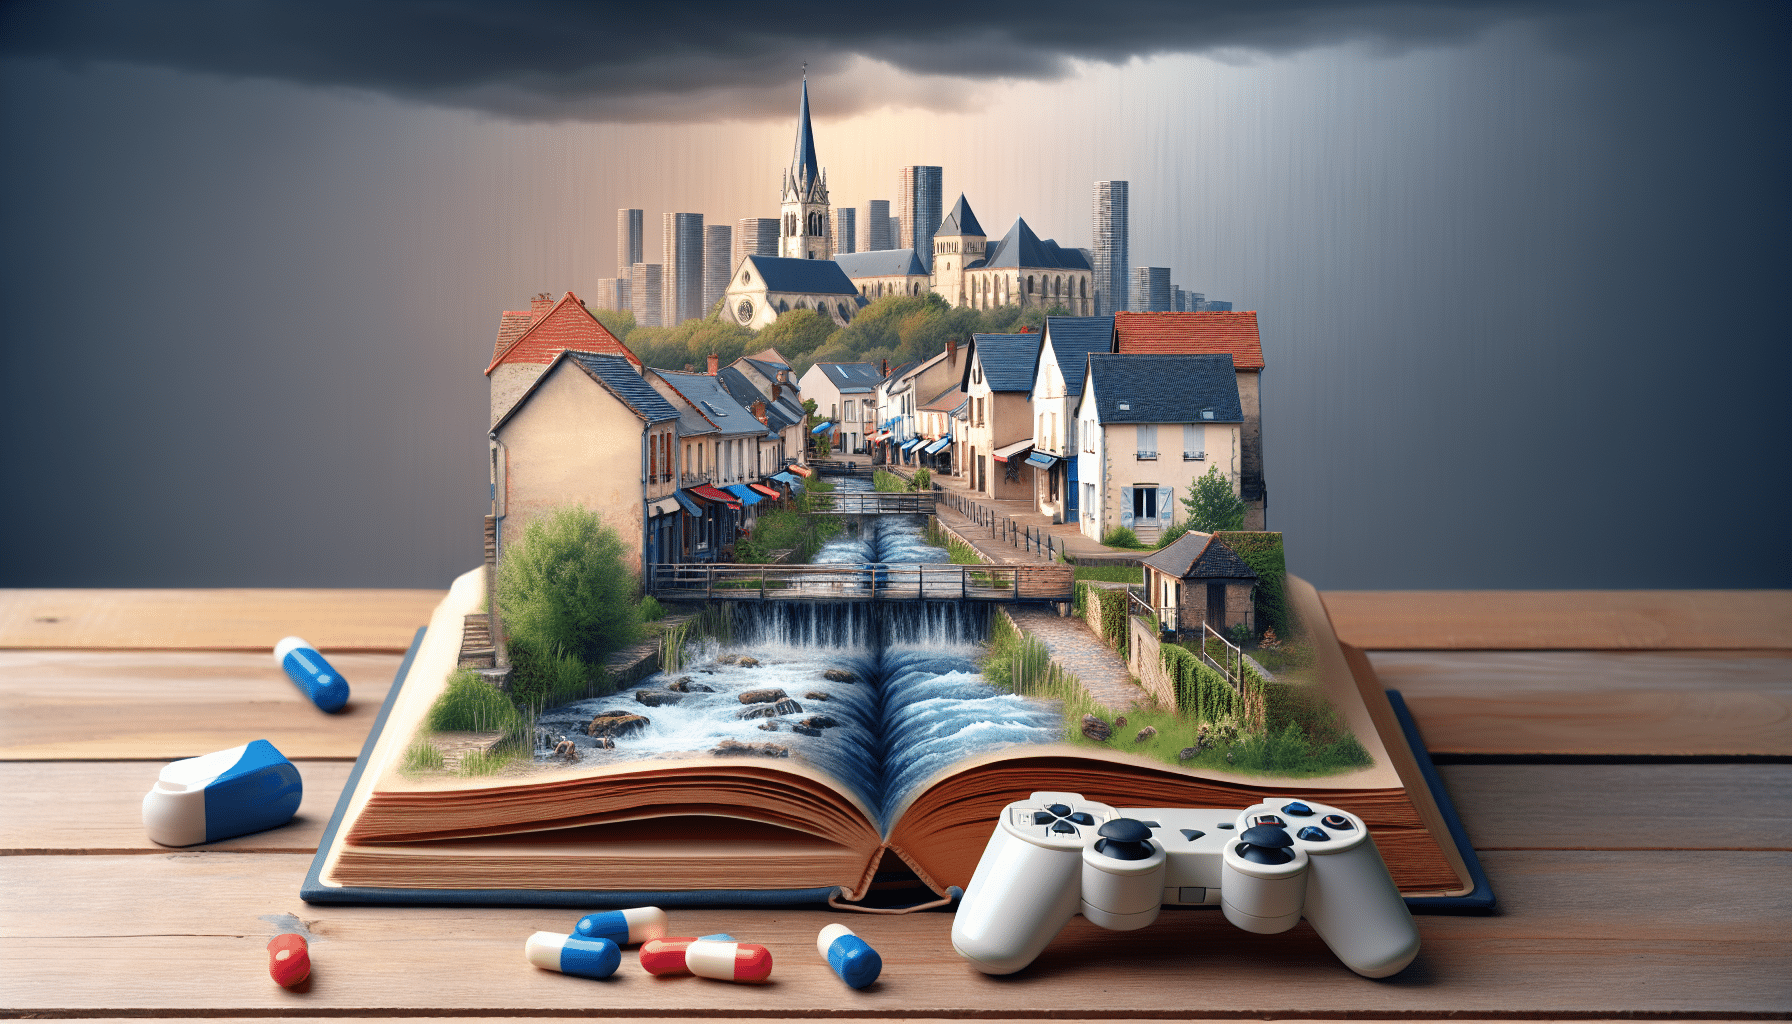 découvrez comment châteauneuf-en-thymerais (28170) intègre les jeux vidéo, les nouveaux livres de notre époque, et enrichit ainsi sa culture !